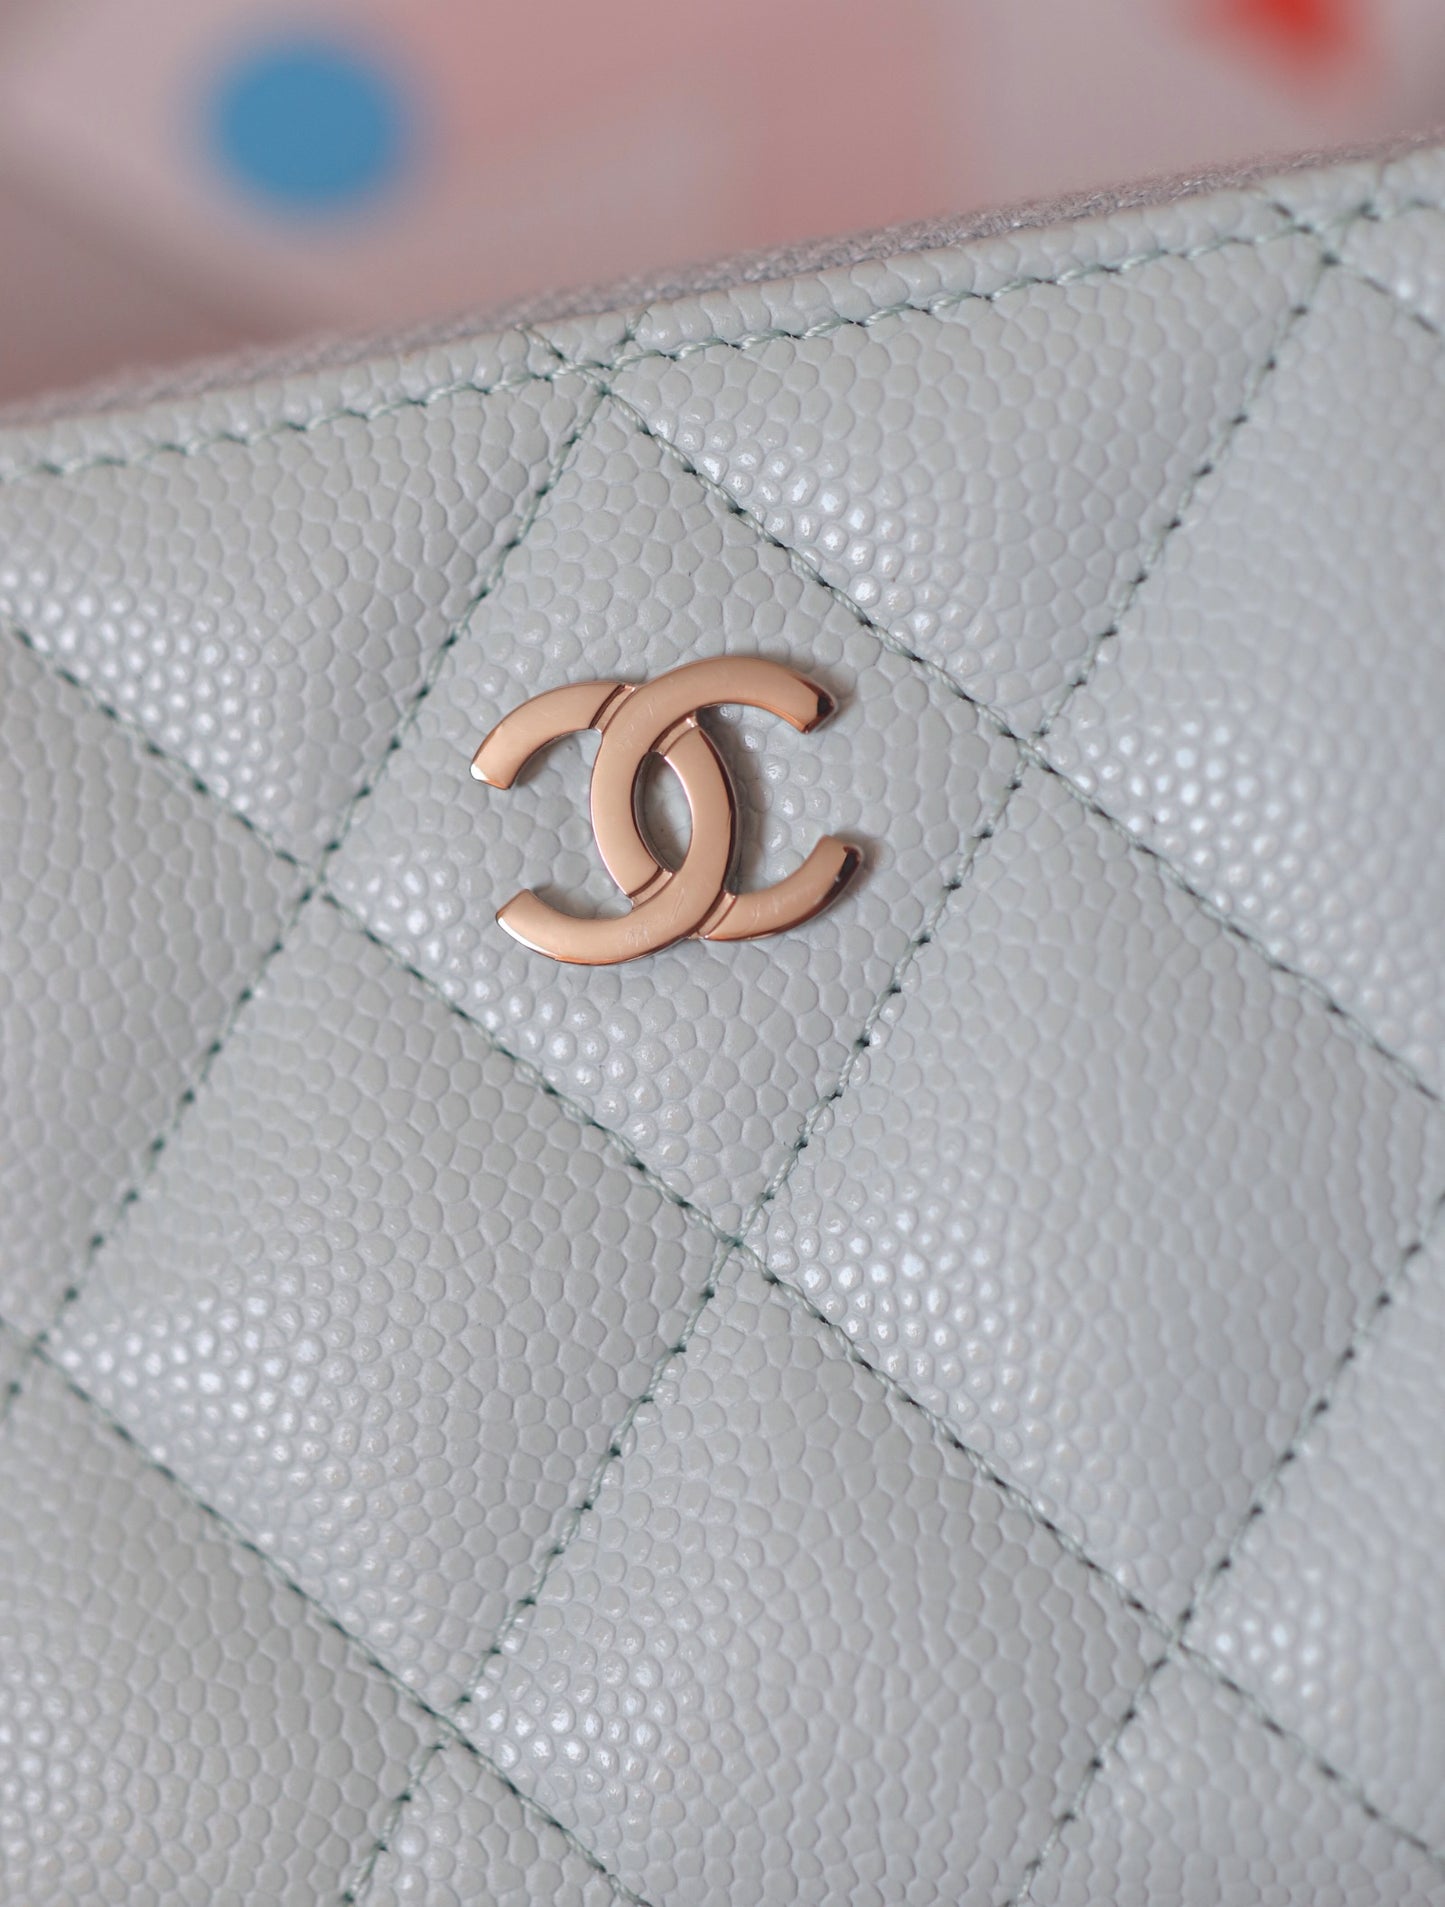 Chanel caviar mini purse